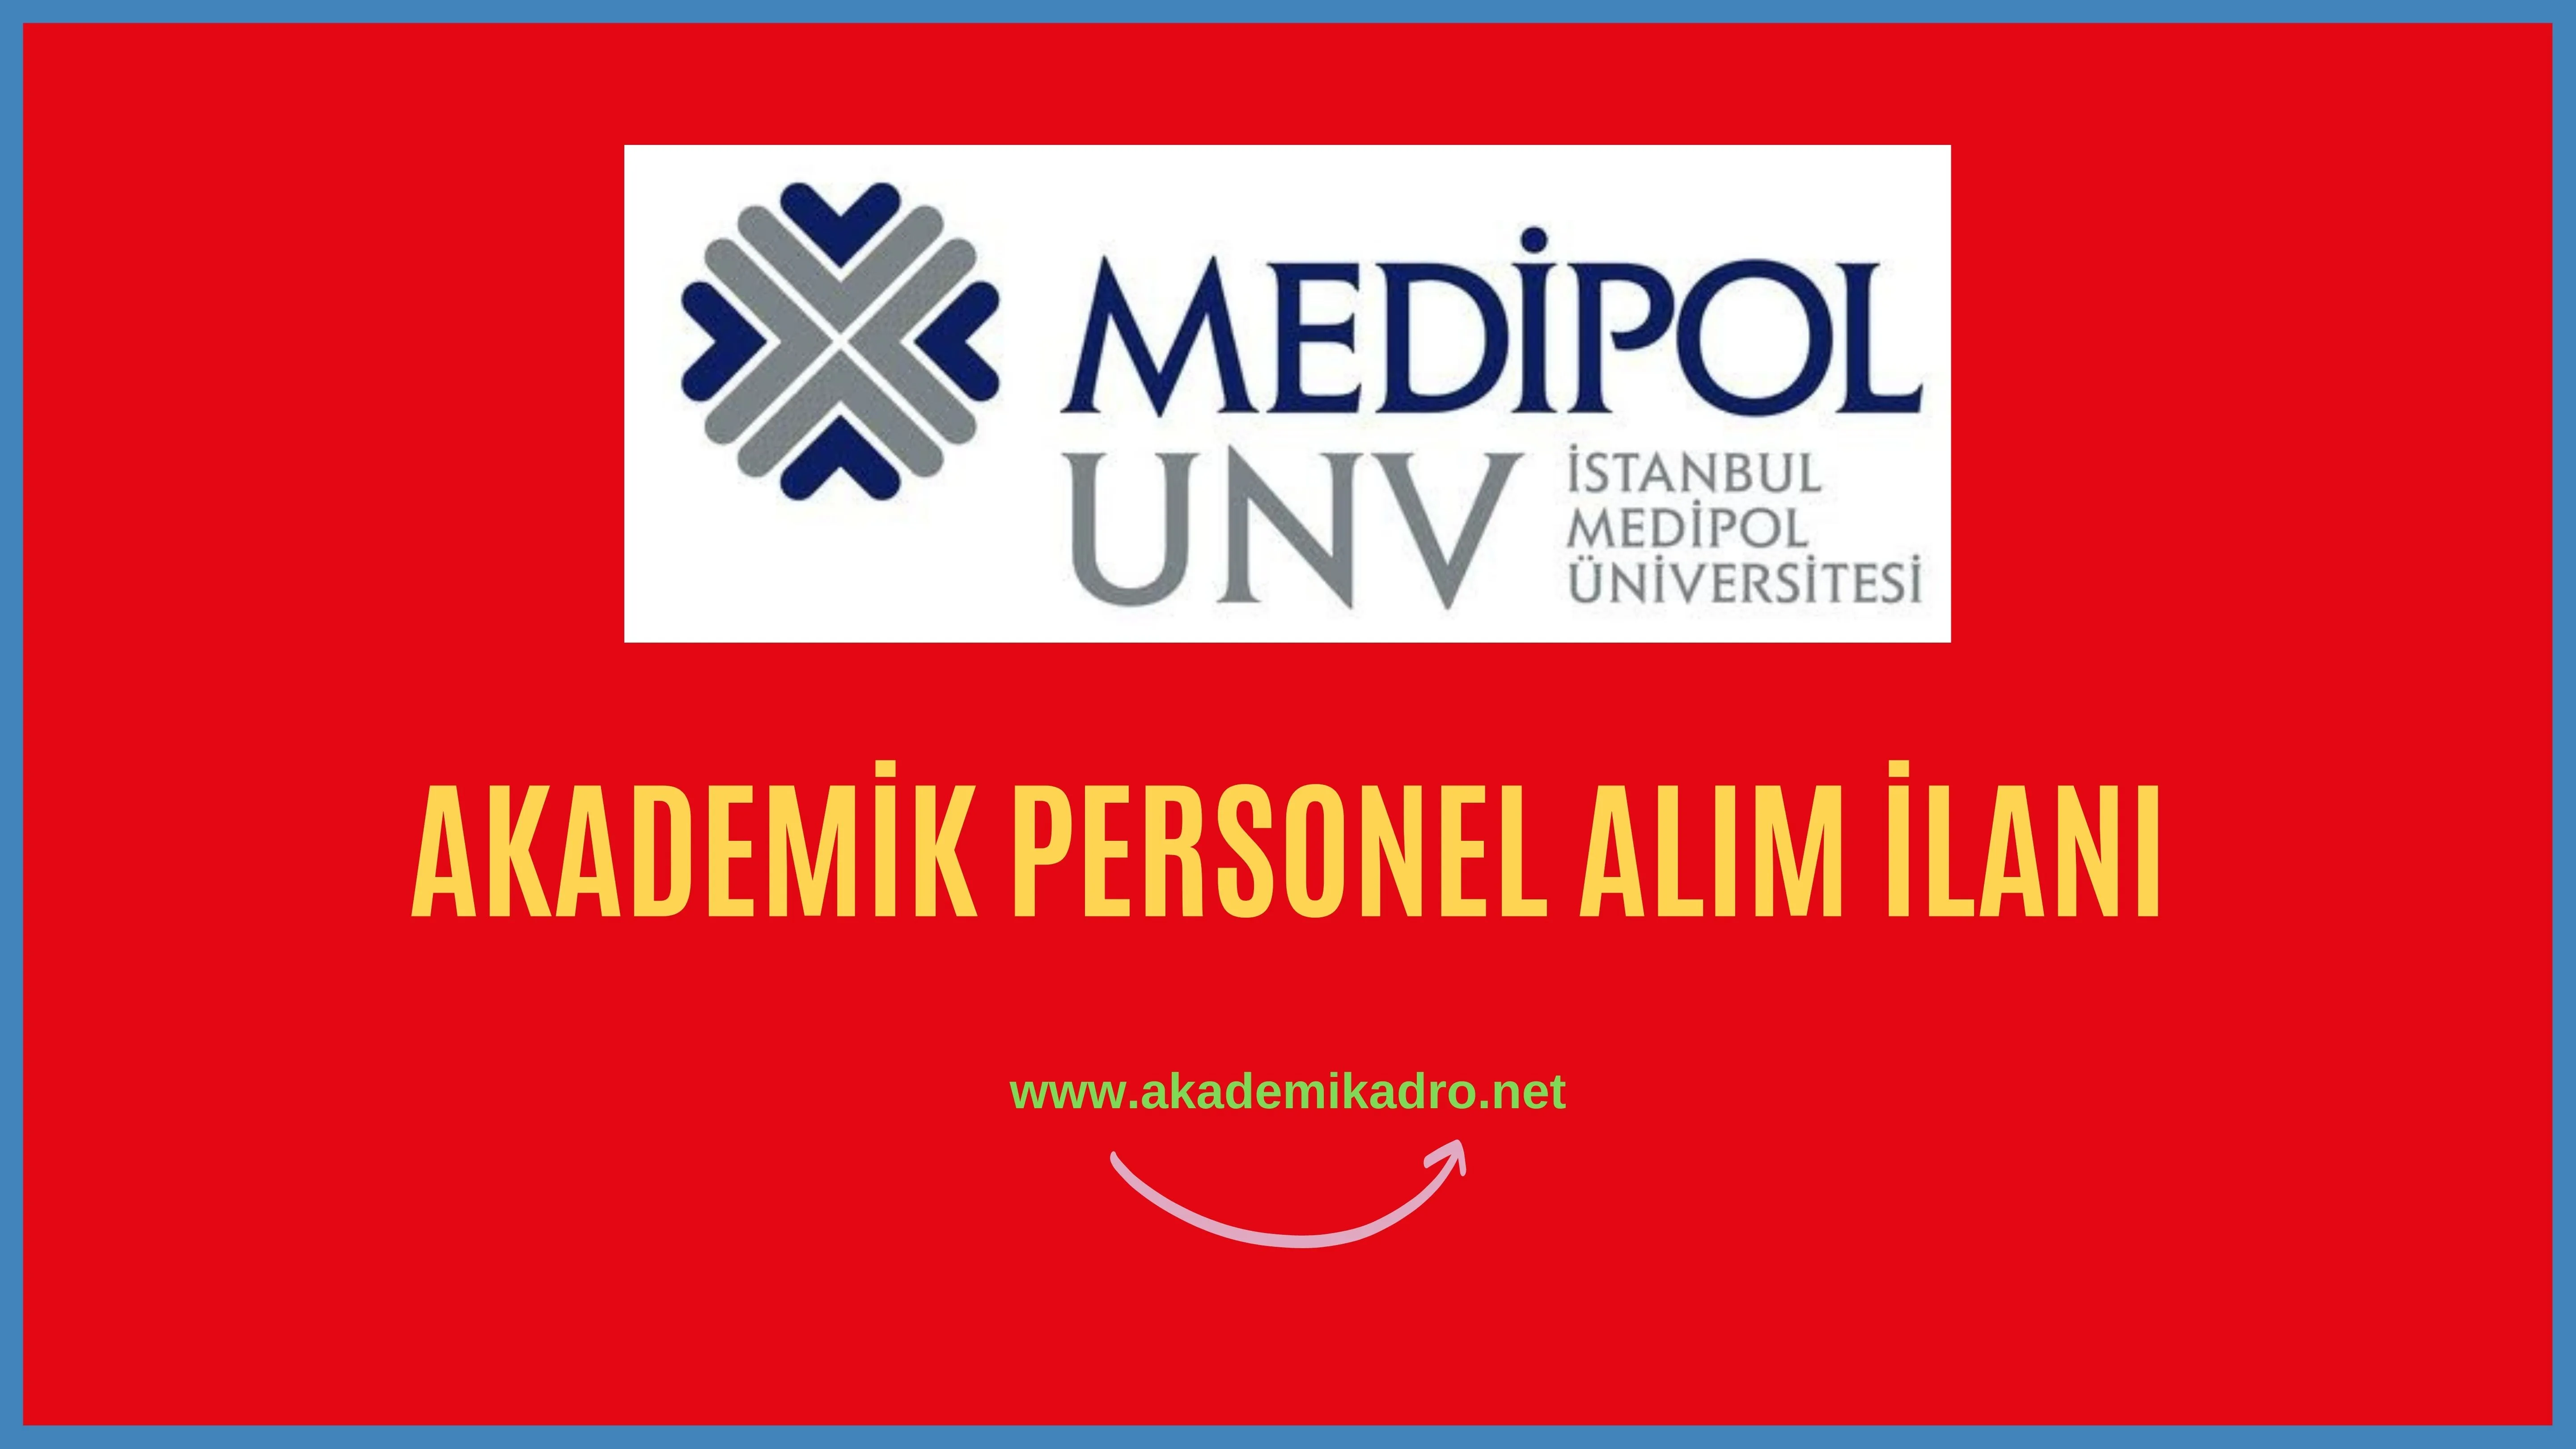 İstanbul Medipol Üniversitesi birçok alandan 26 Akademik personel alacak.